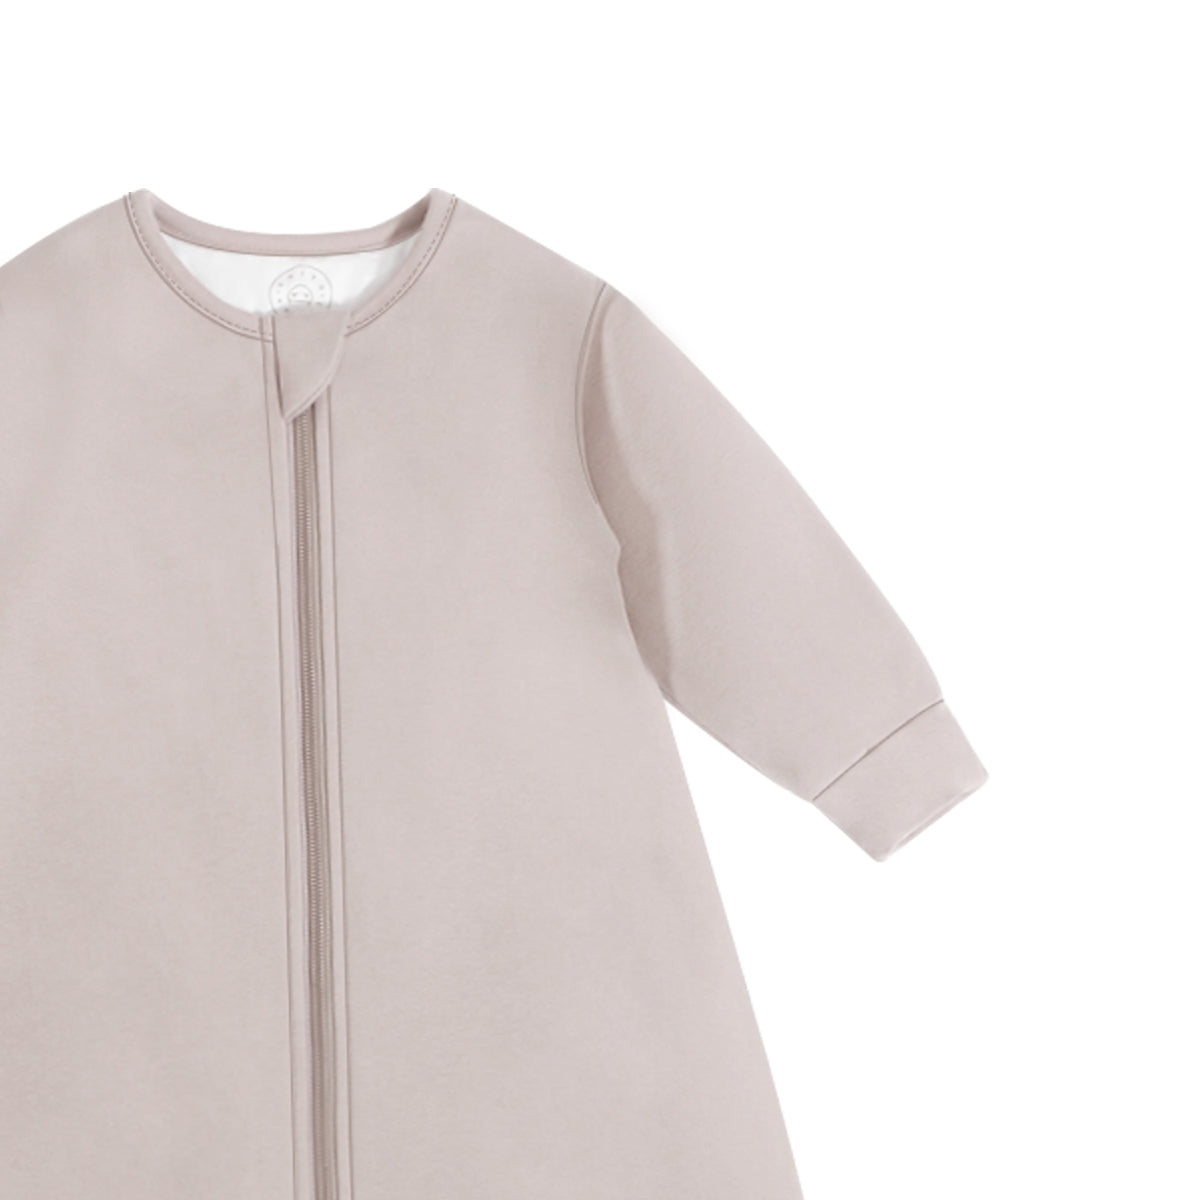 Toddler Zip Sleep Sack Organic Cotton Long Sleeve With Footie 2.5 TOG Customize - Smoky Pink